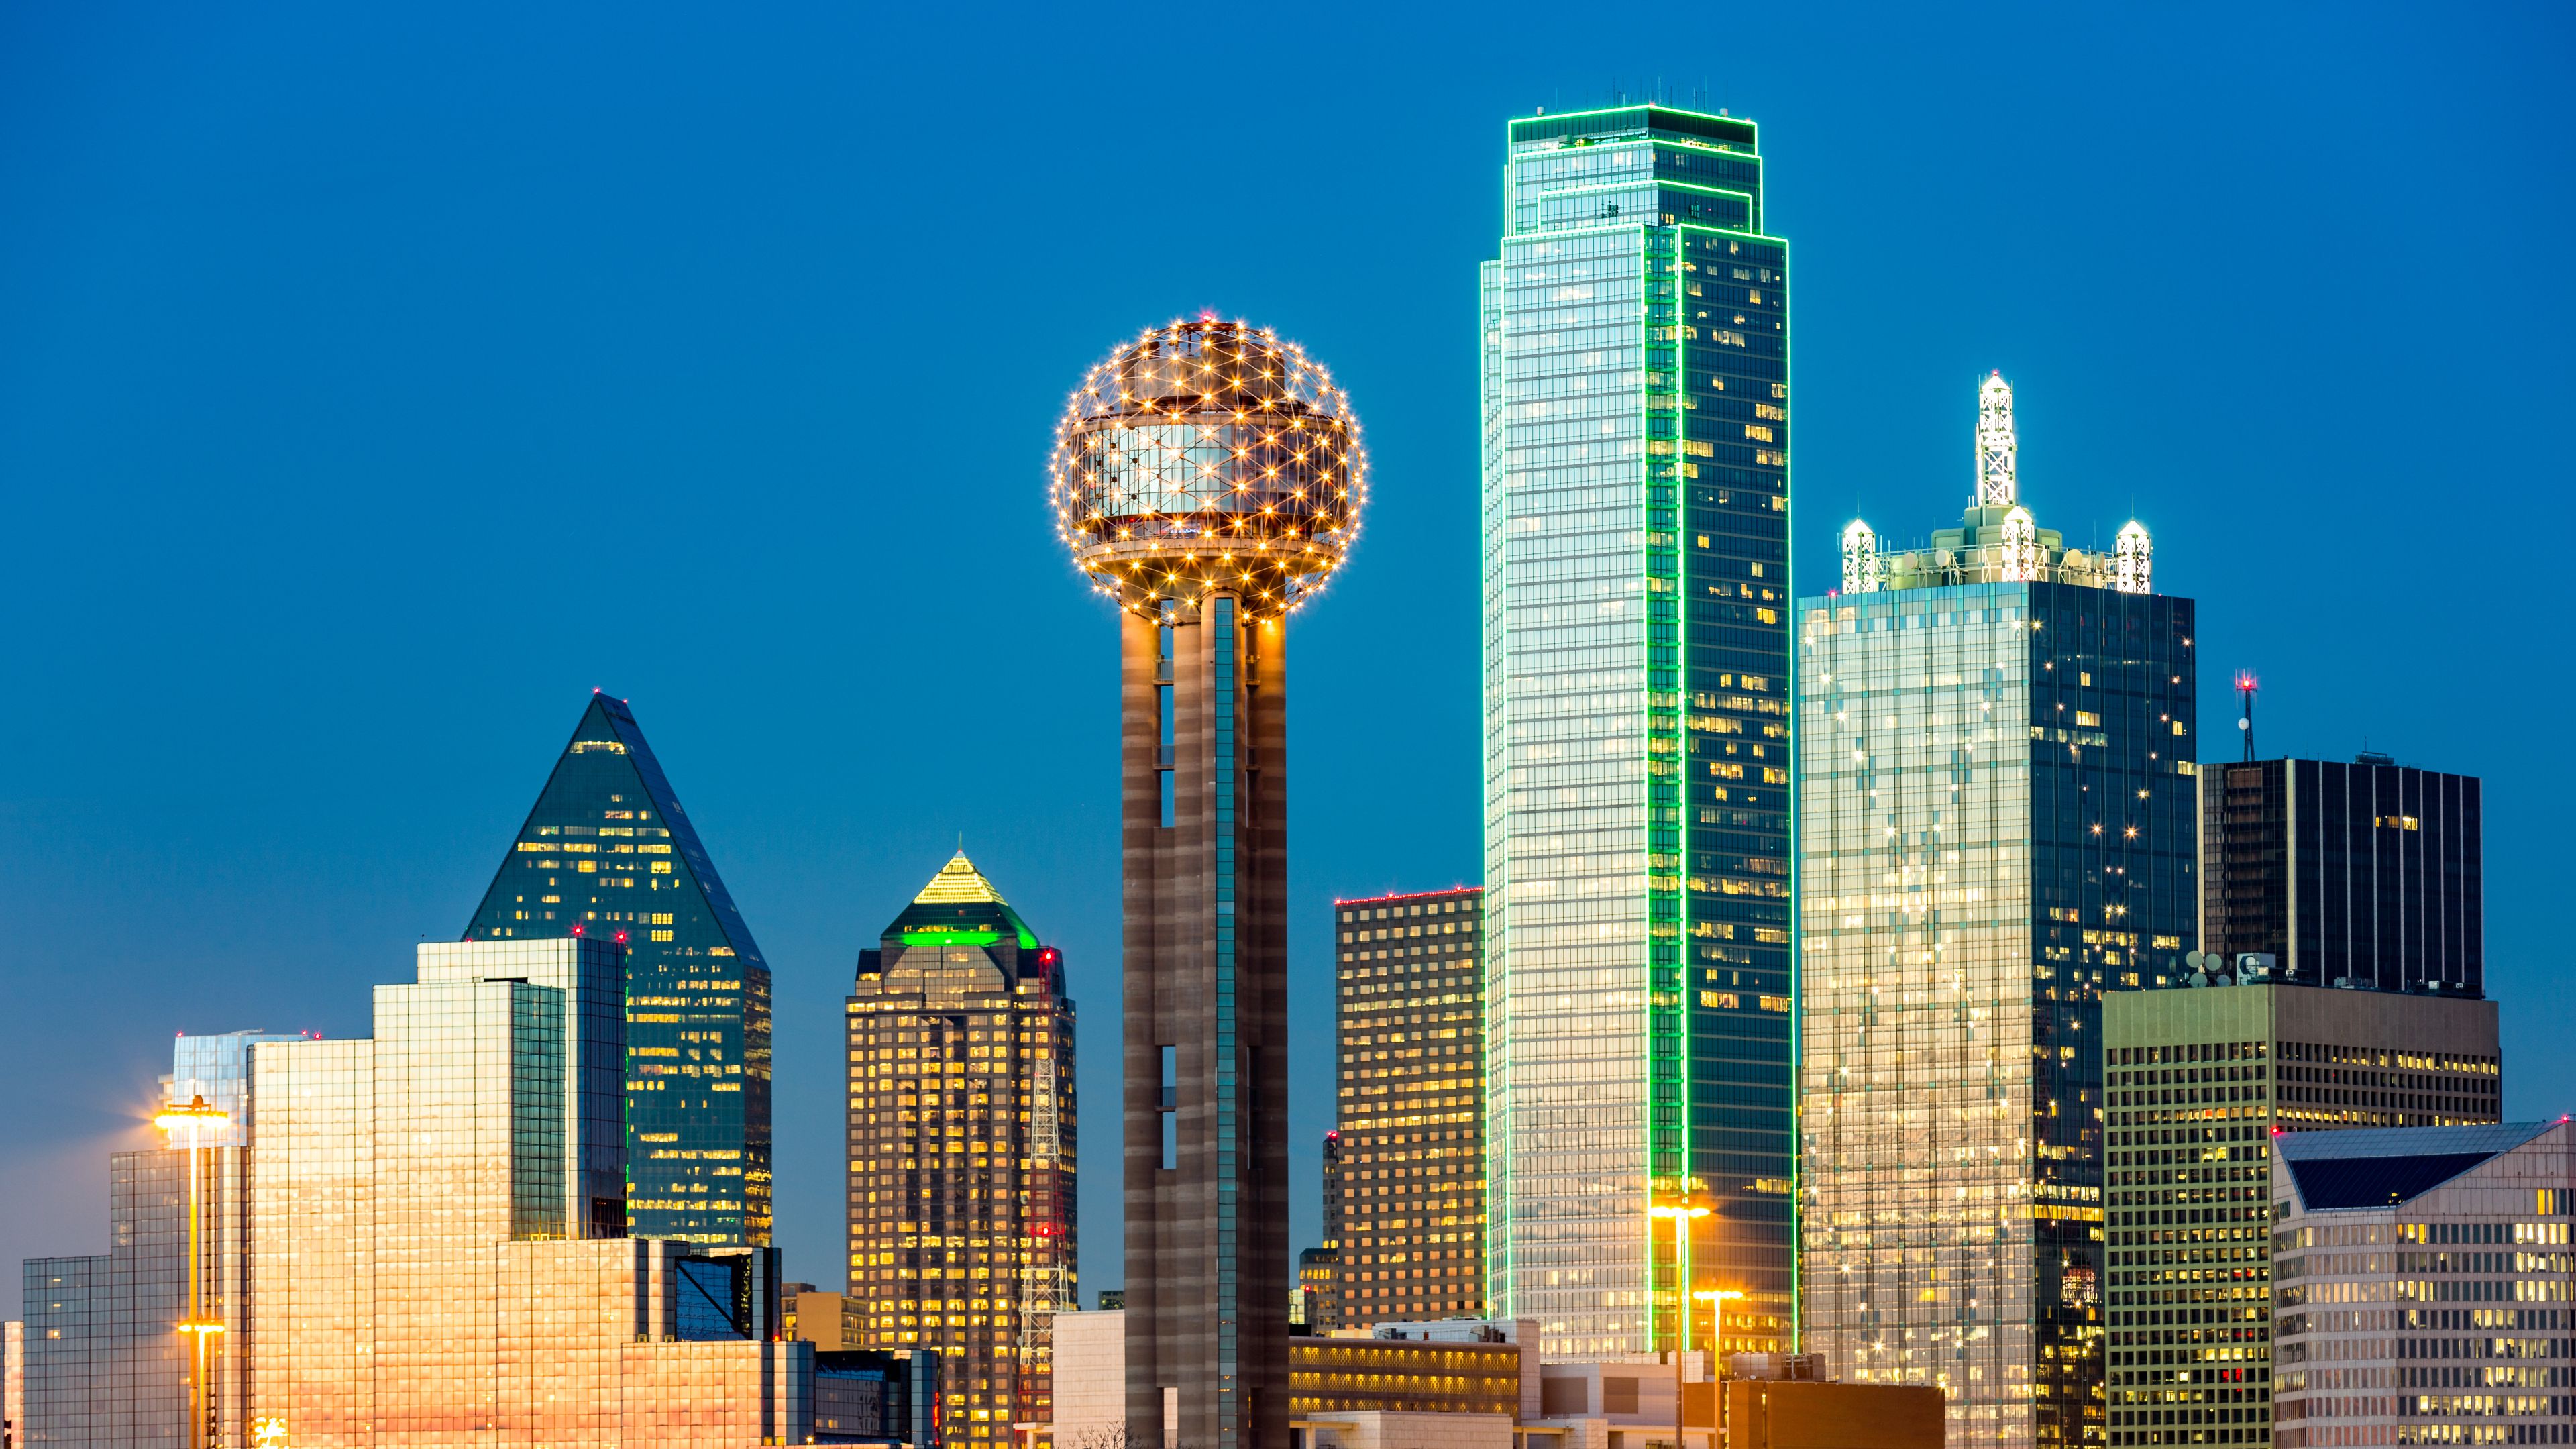 Dallas TX: Top Attractions, Hotels, Restaurants & Insider Tips